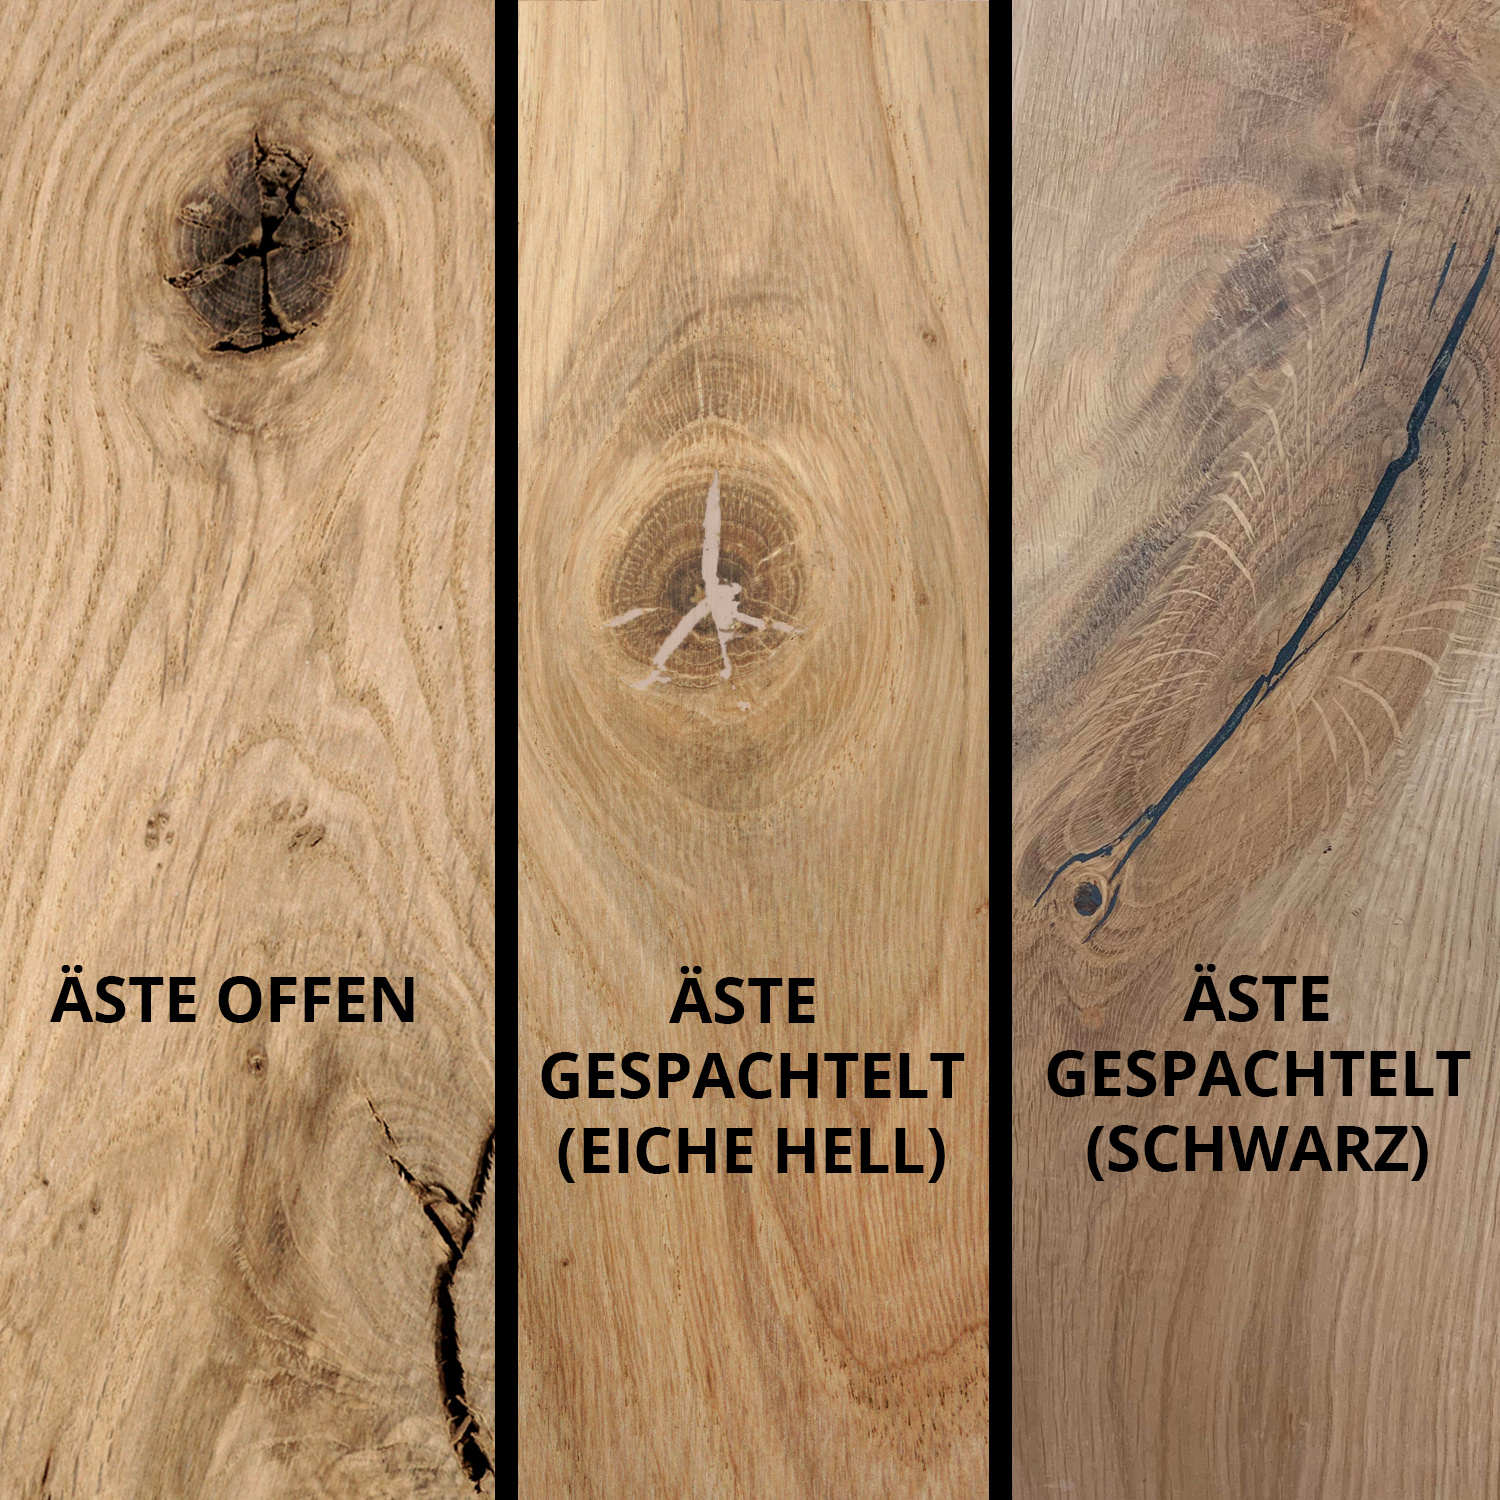  Tischplatte Eiche rund nach Maß - 4 cm dick (2-lagig) - Eichenholz rustikal - Durchmesser: 35 - 130 cm - Eiche Tischplatte rund massiv - verleimt & künstlich getrocknet (HF 8-12%)